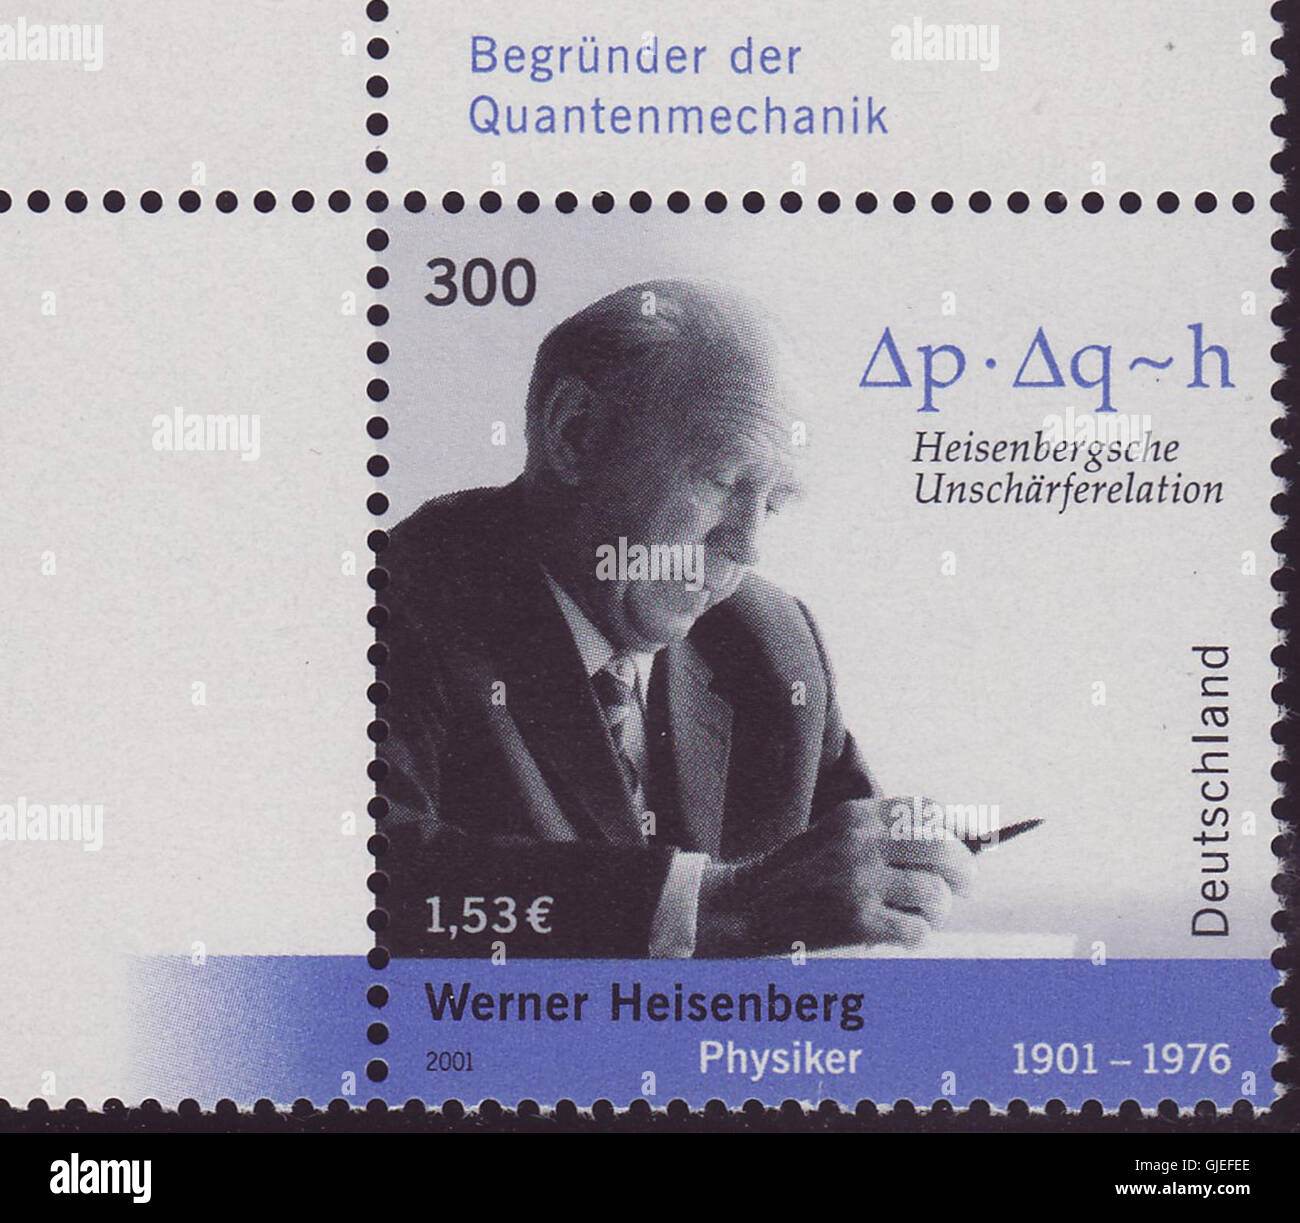 Werner Heisenberg Briefmarke Foto Stock